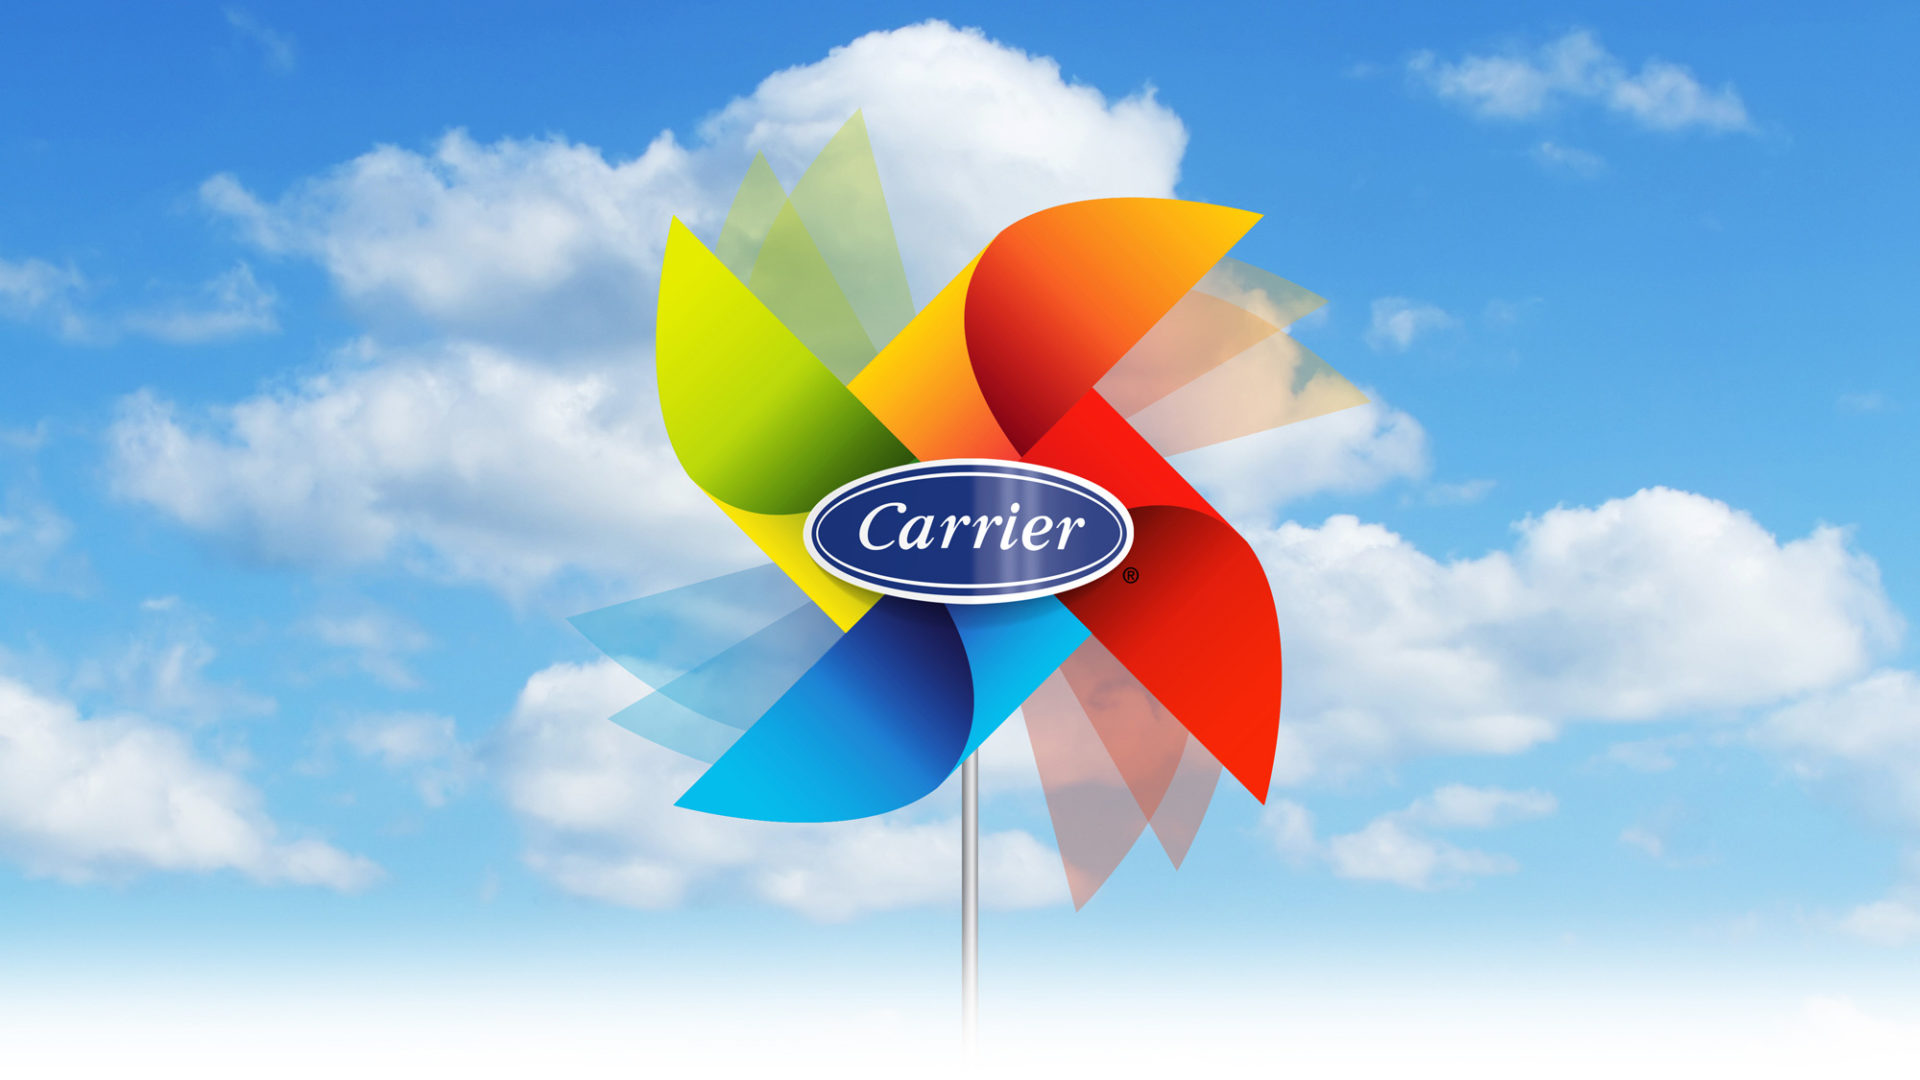 carrier_virevent